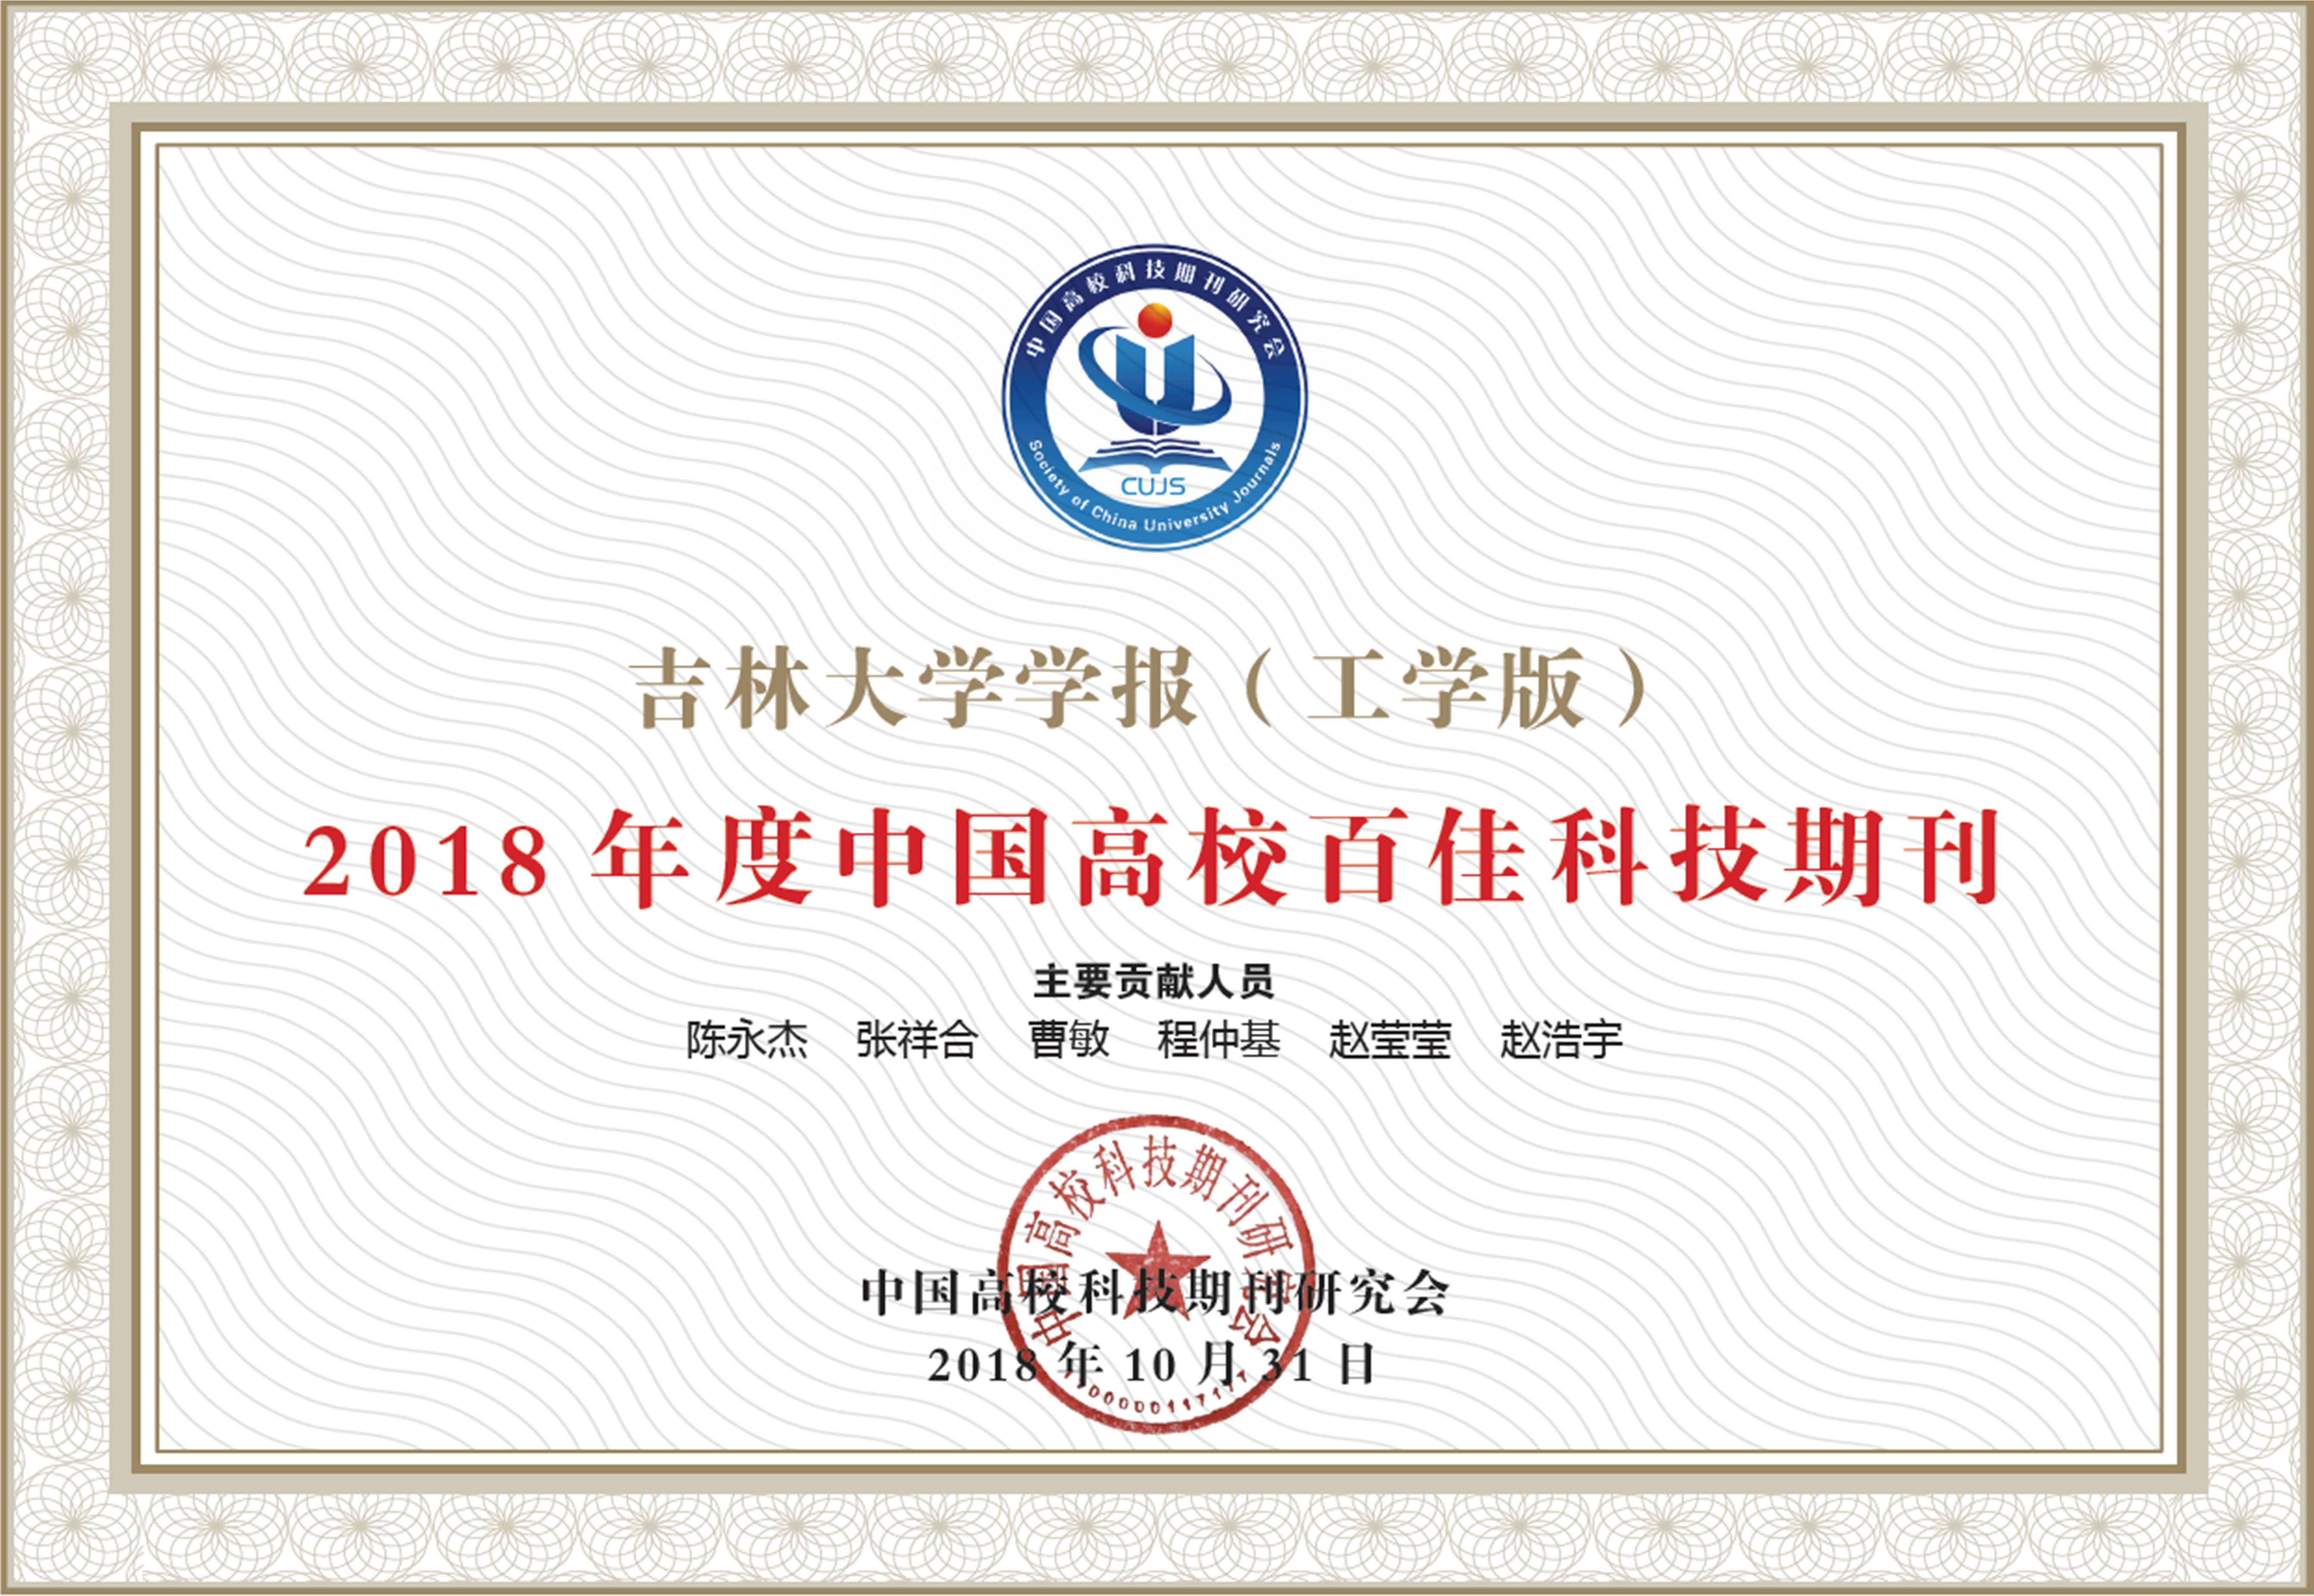 《吉林大学学报(工学版)》荣获“2018年度中国高校百佳科技期刊”